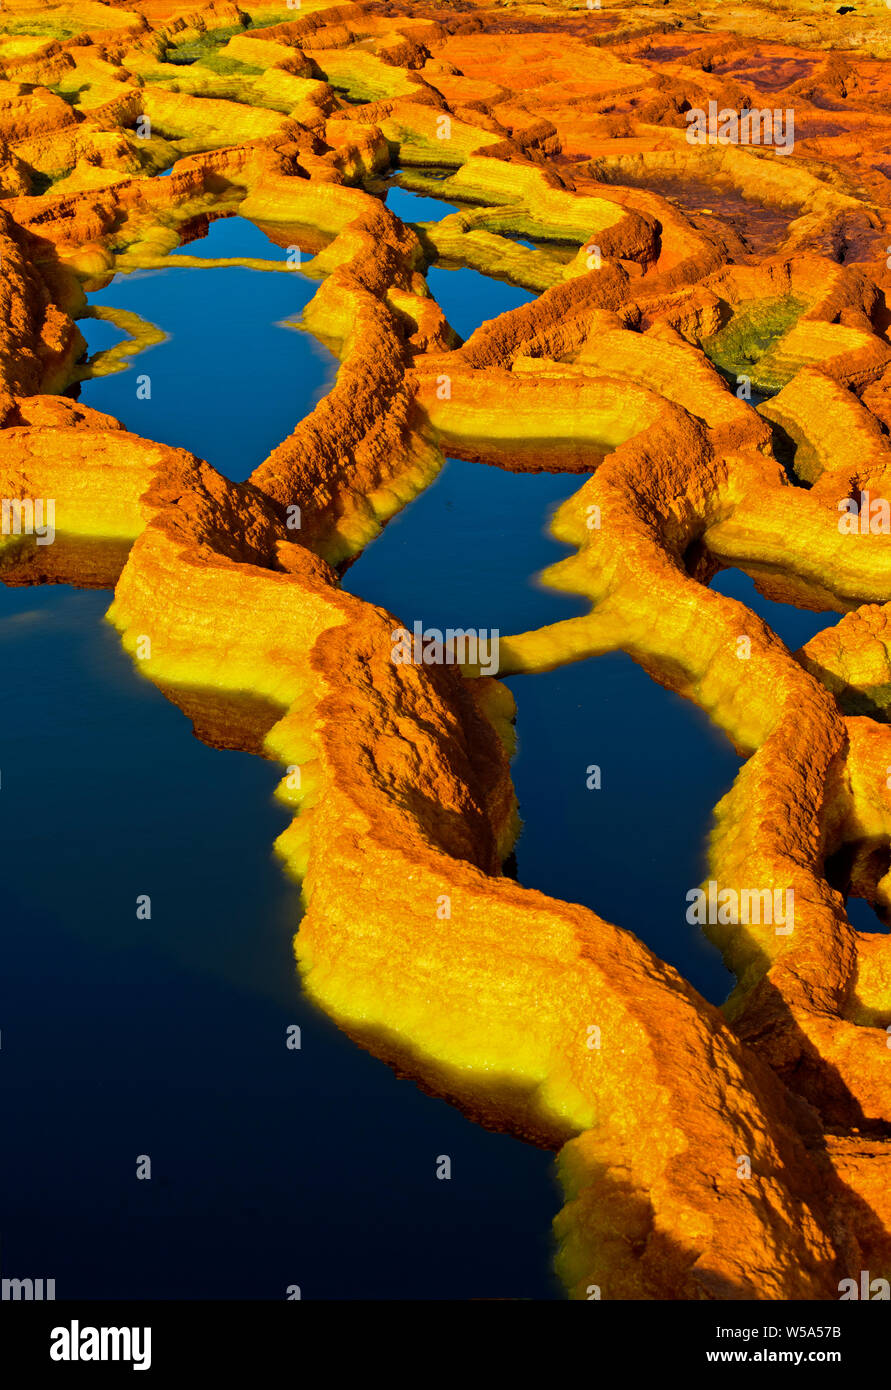 Rostfarbener Salz Strukturen in einer Säure Sole-pool, geothermische Feld von Dallol, Danakil Depression, Afar Dreieck, Äthiopien Stockfoto